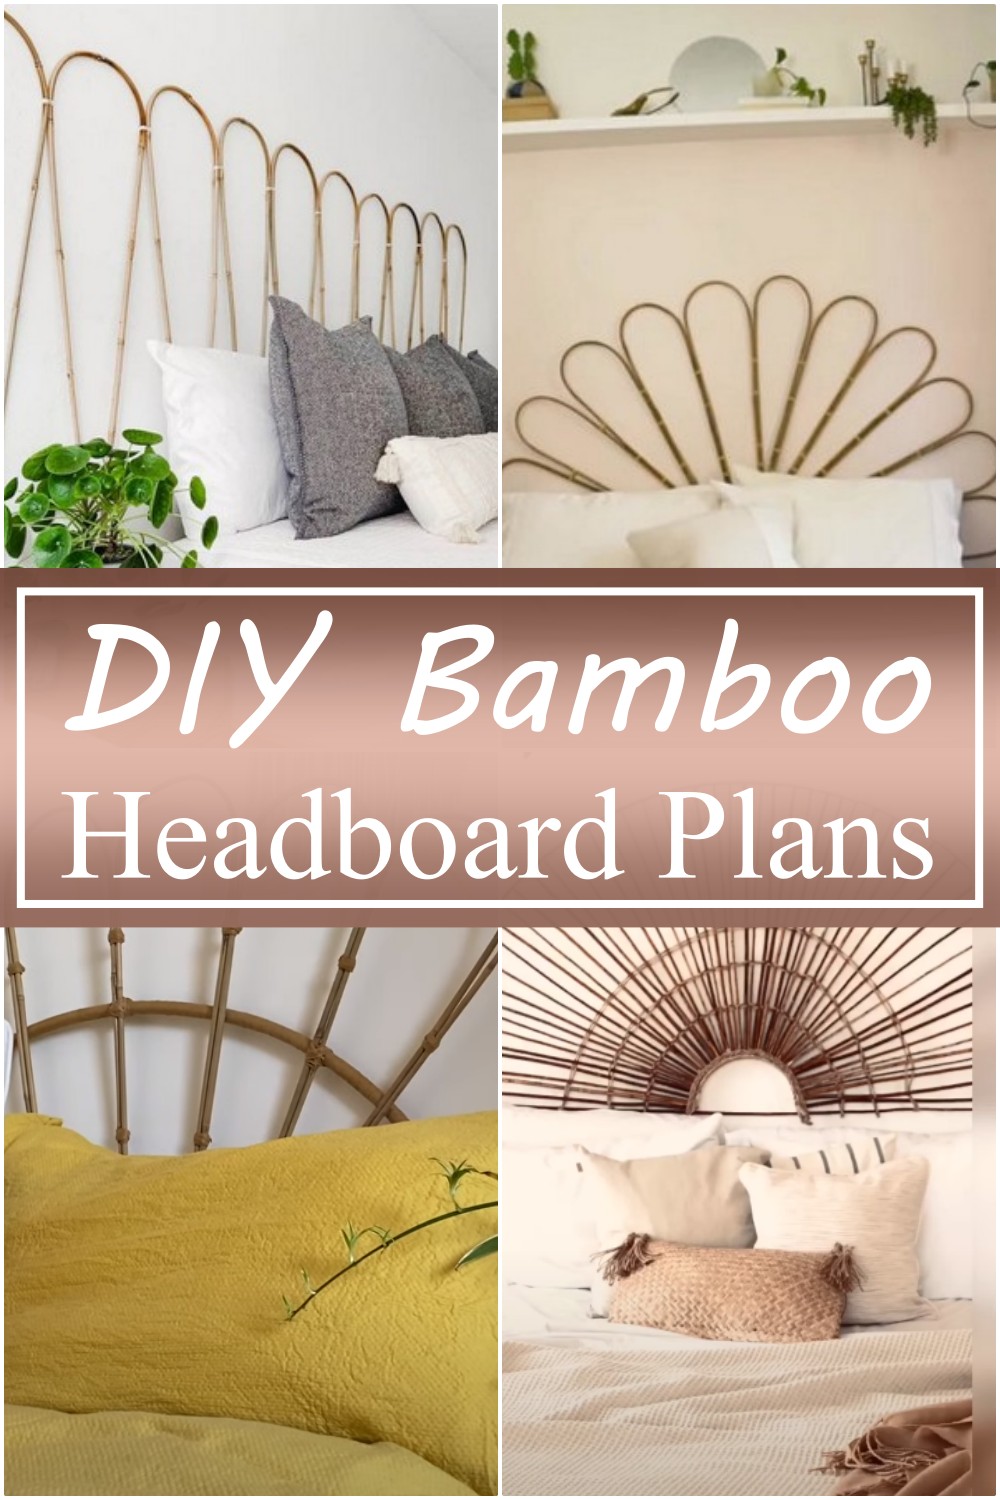 DIY Bamboo Headboard Plans